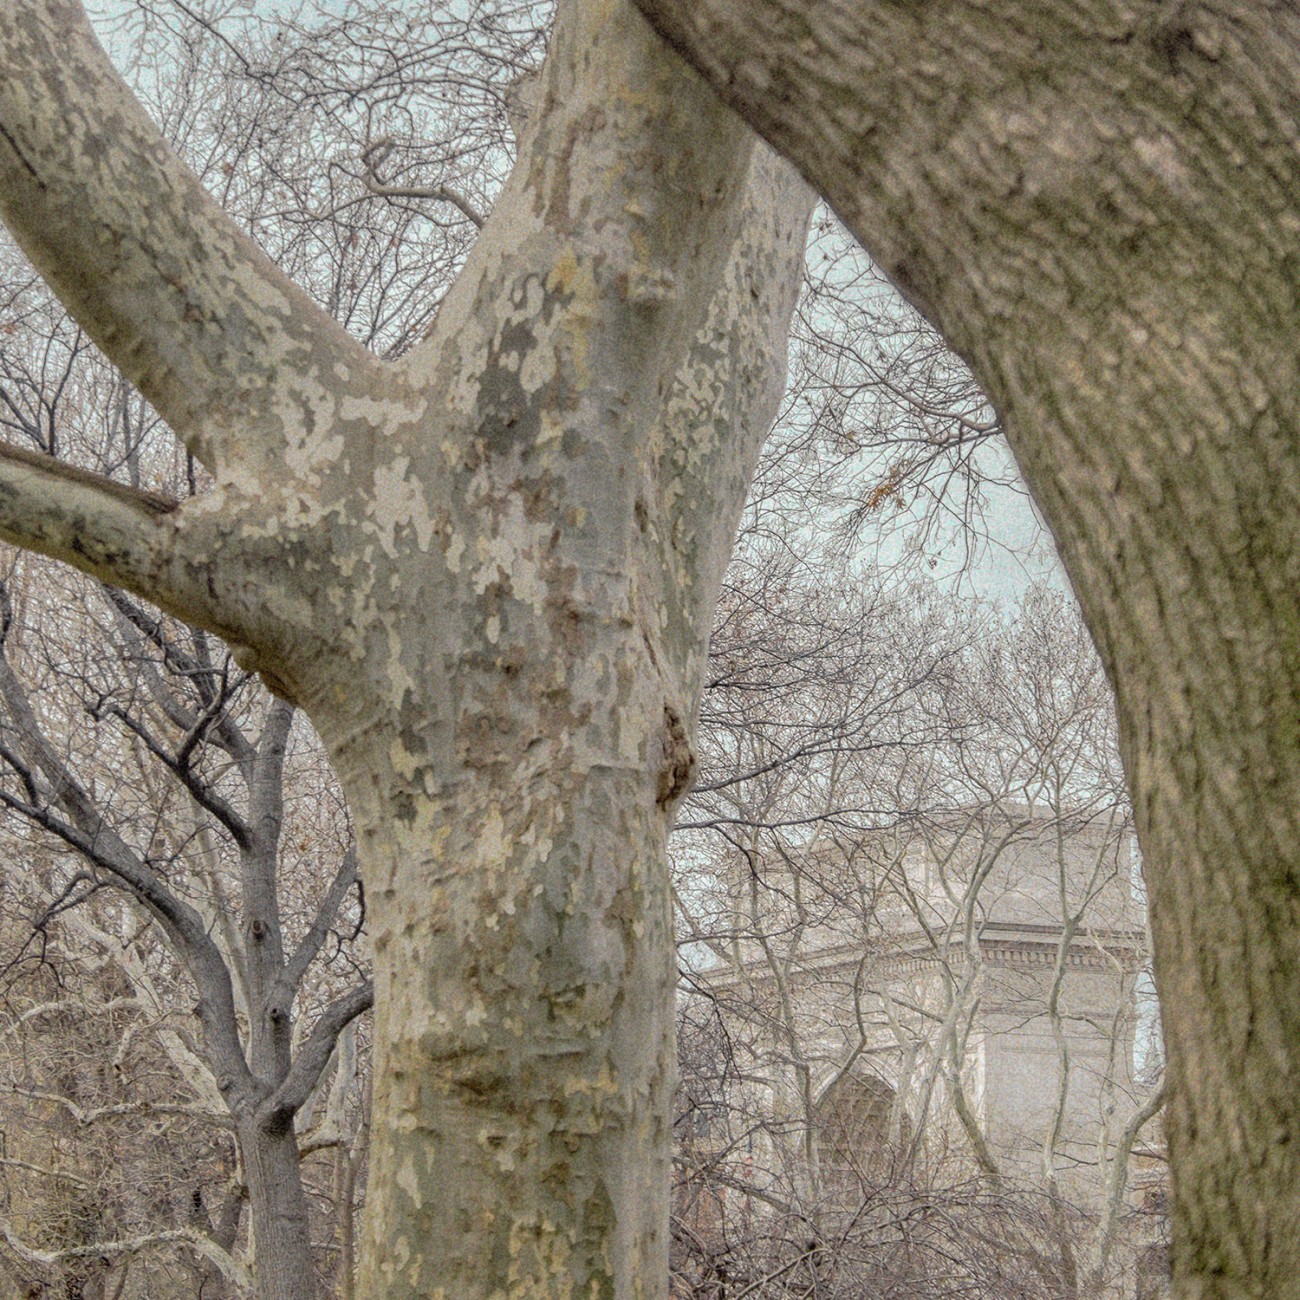 Washington Square arches and trees, NY, 2015